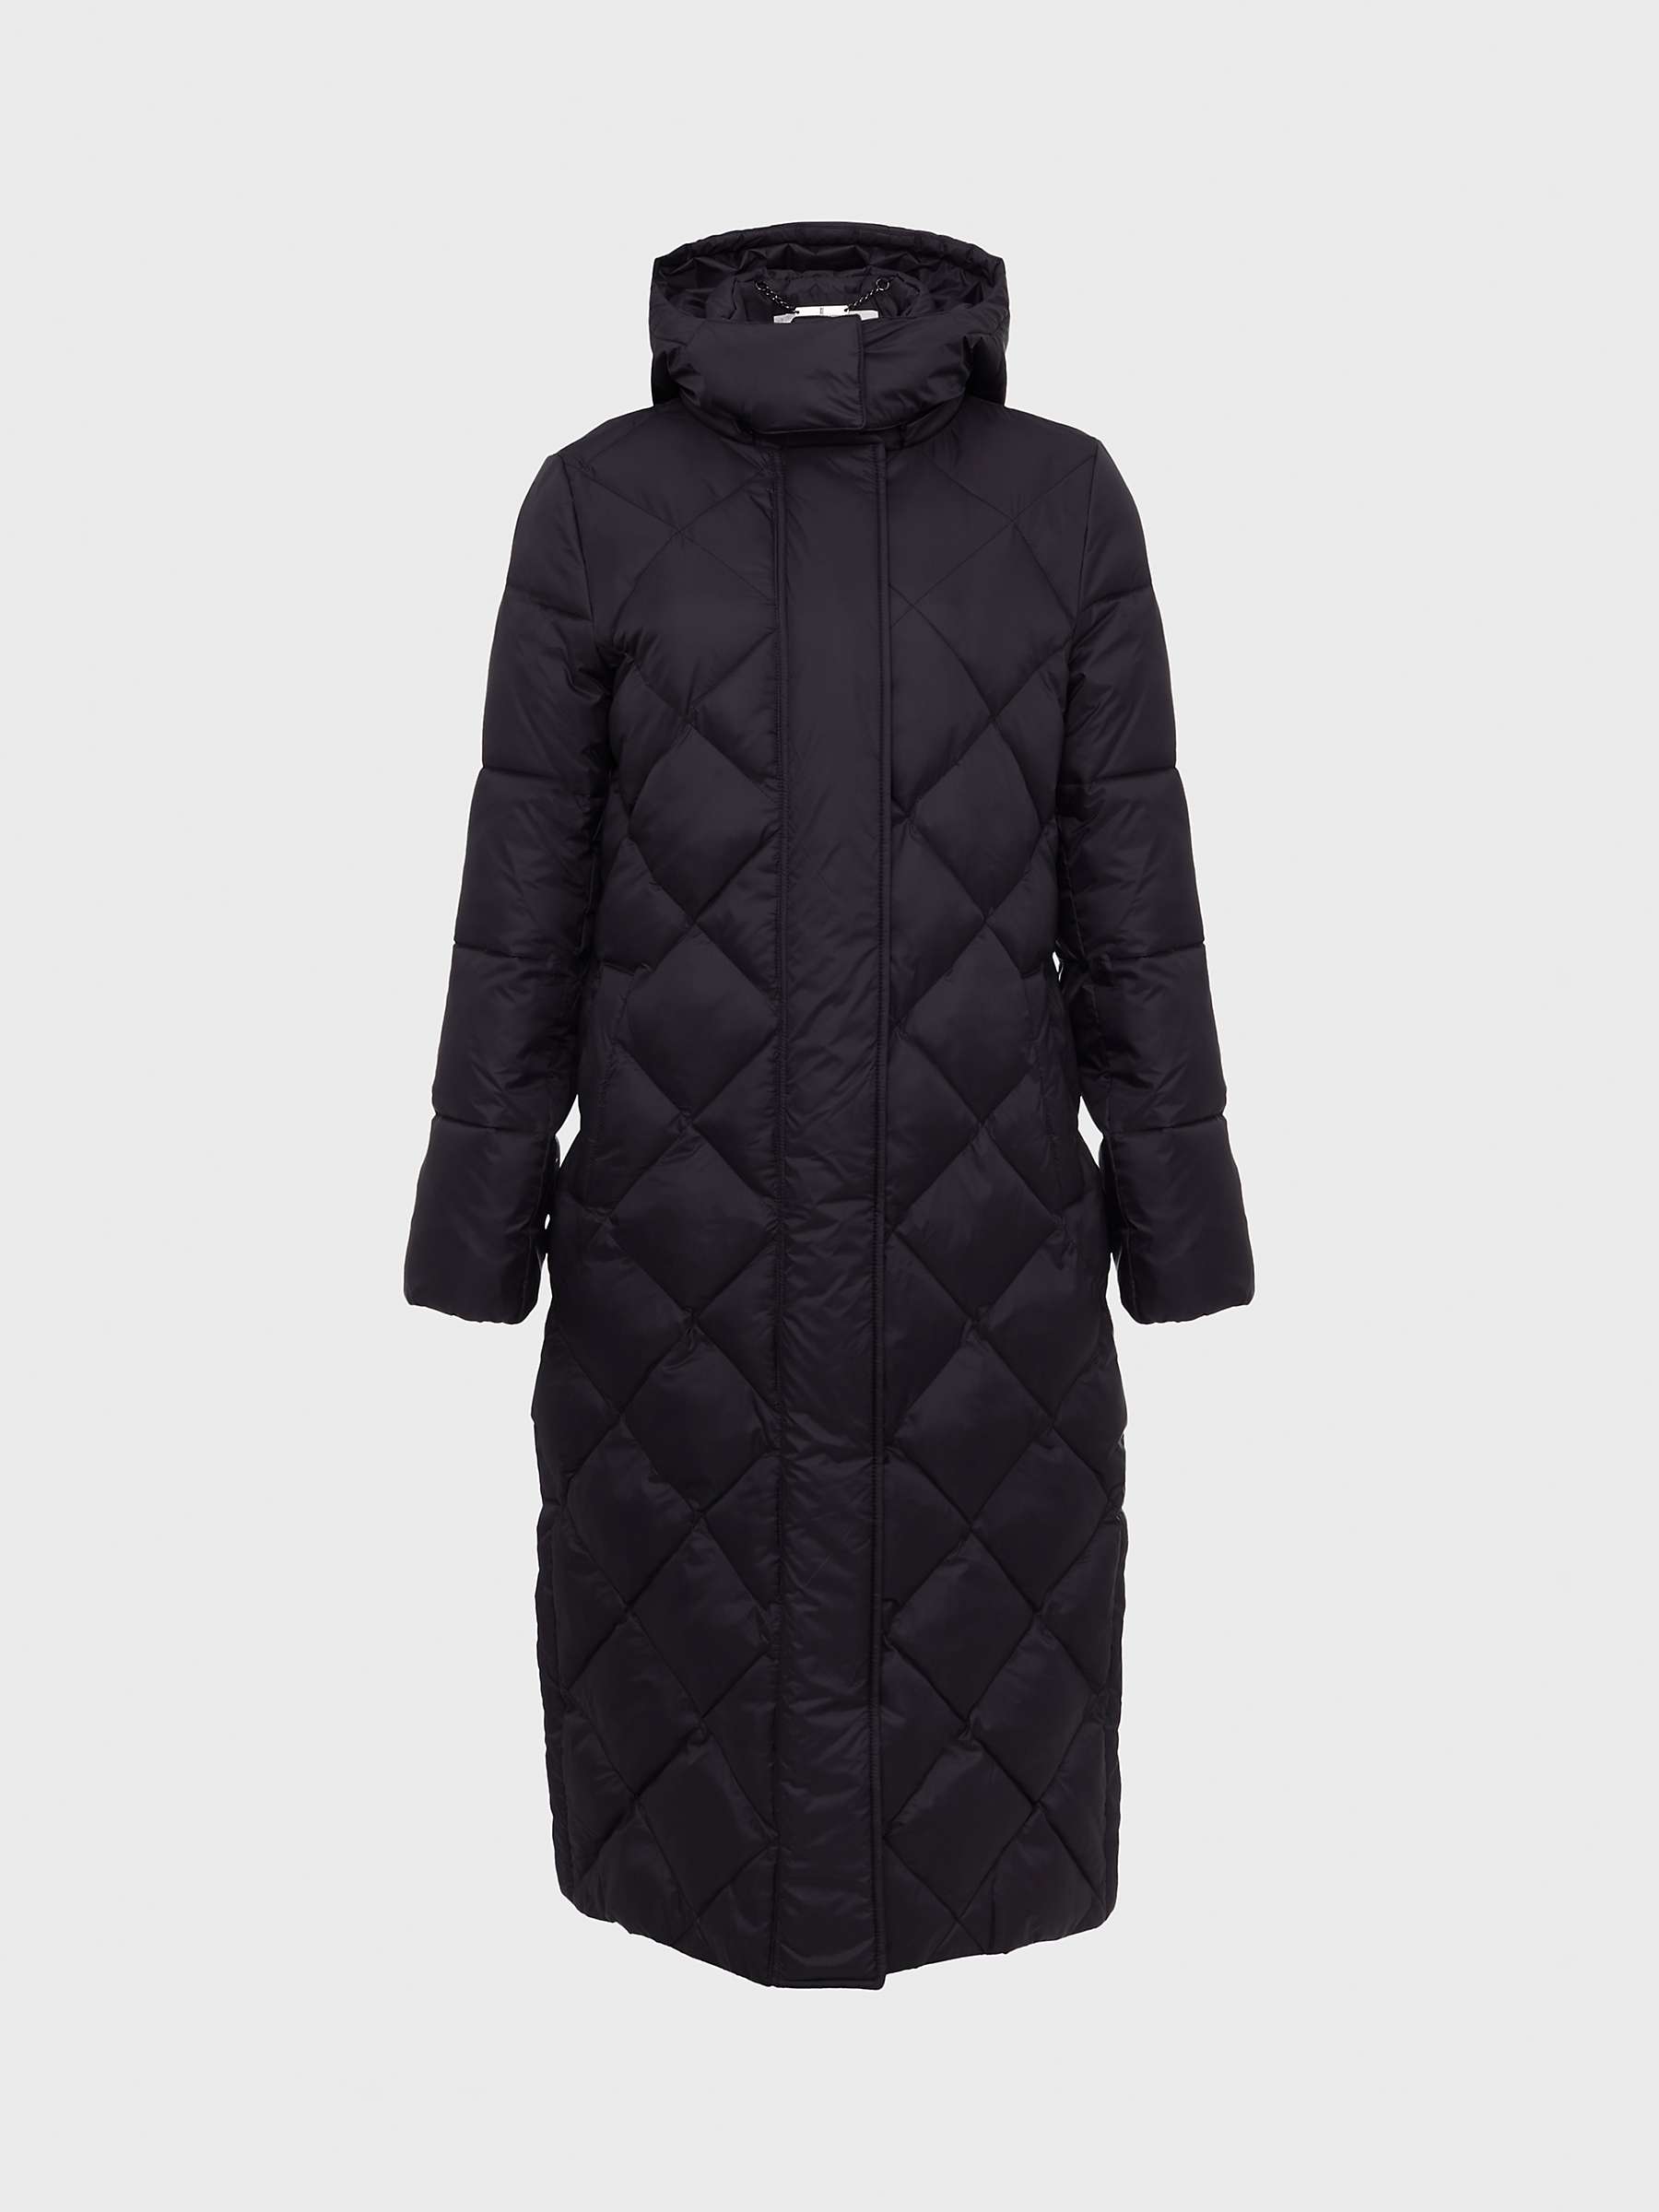 Buy Hobbs Avril Puffer Hooded Coat, Black Online at johnlewis.com